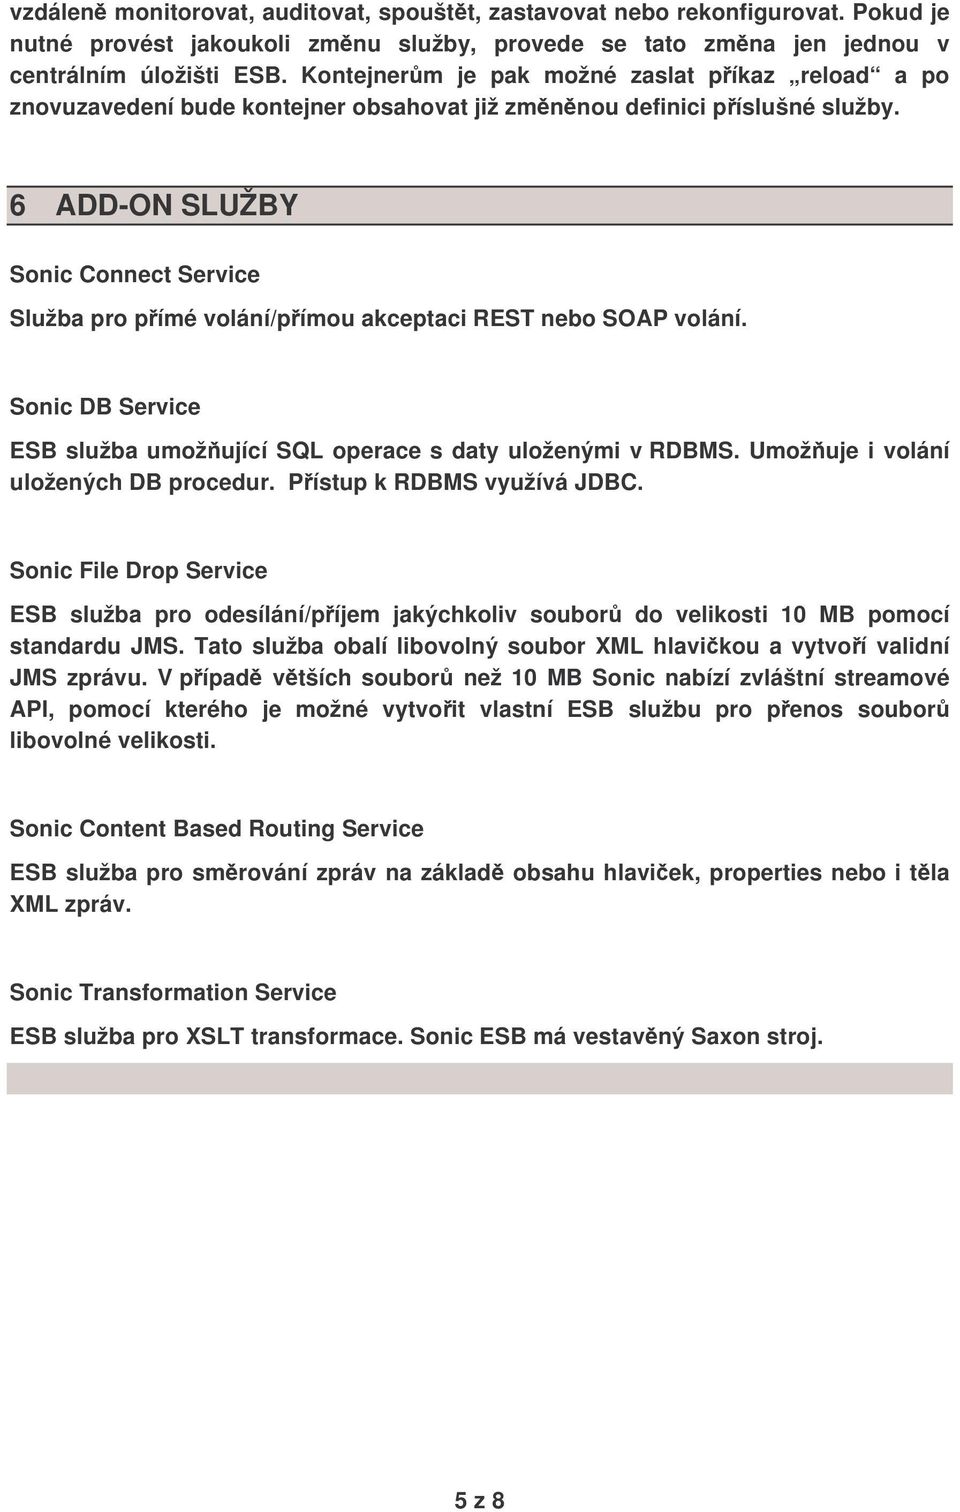 6 ADD-ON SLUŽBY Sonic Connect Service Služba pro pímé volání/pímou akceptaci REST nebo SOAP volání. Sonic DB Service ESB služba umožující SQL operace s daty uloženými v RDBMS.